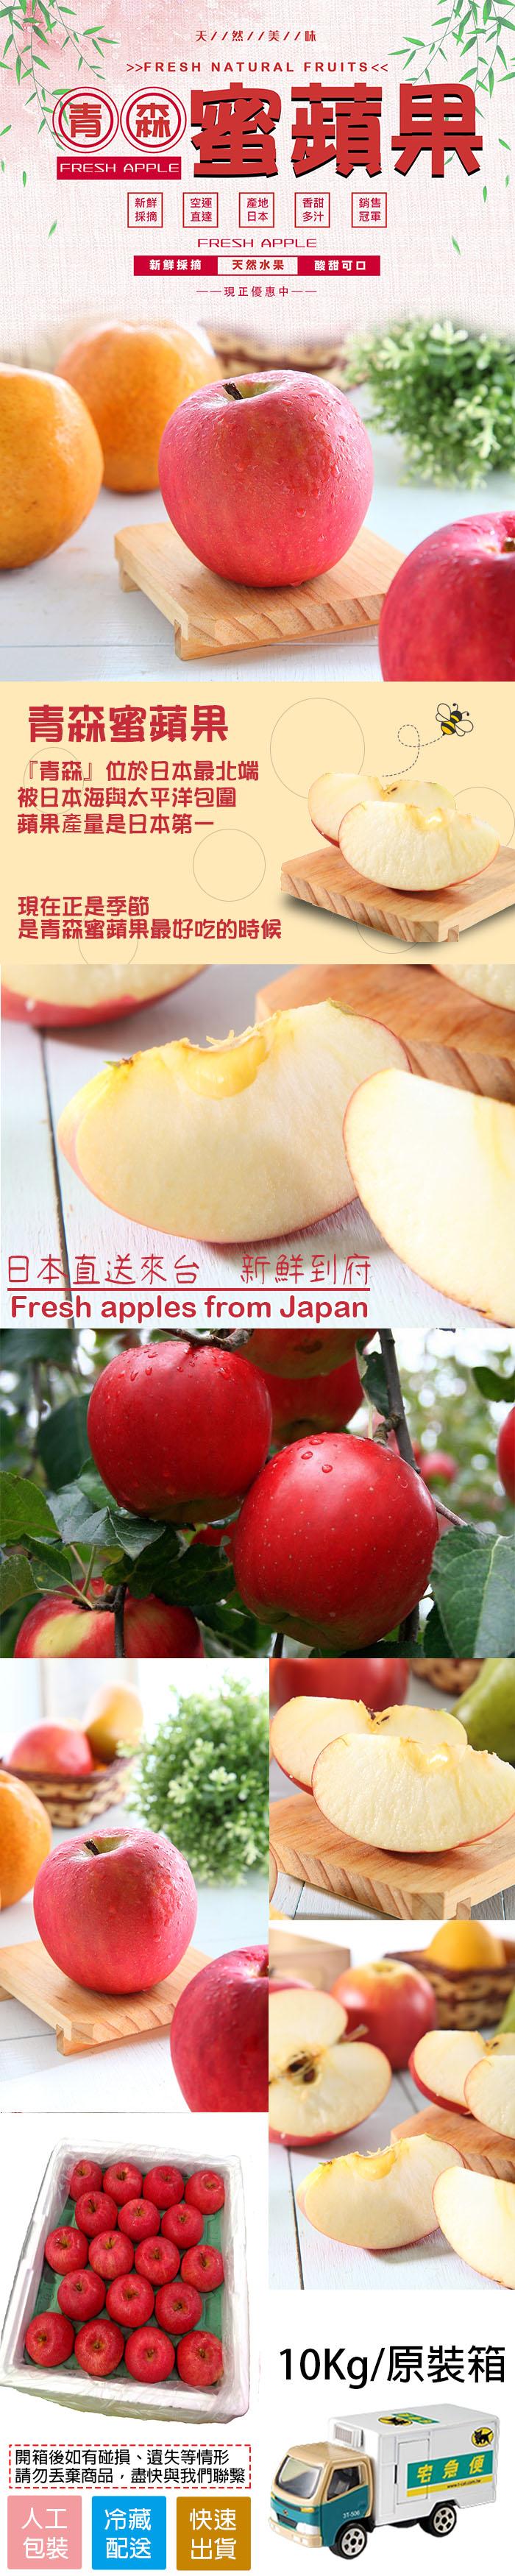 天//然//美//味，O 雪蘋果，新鮮採摘 天然水果，——現正優惠中——，青森蜜蘋果，青森位於日本最北端，被日本海與太平洋包圍，蘋果產量是日本第一，現在正是季節，是青森蜜蘋果最好吃的時候，開箱後如有碰損、遺失等情形，丟棄商品,盡快與我們聯繫，冷藏 快